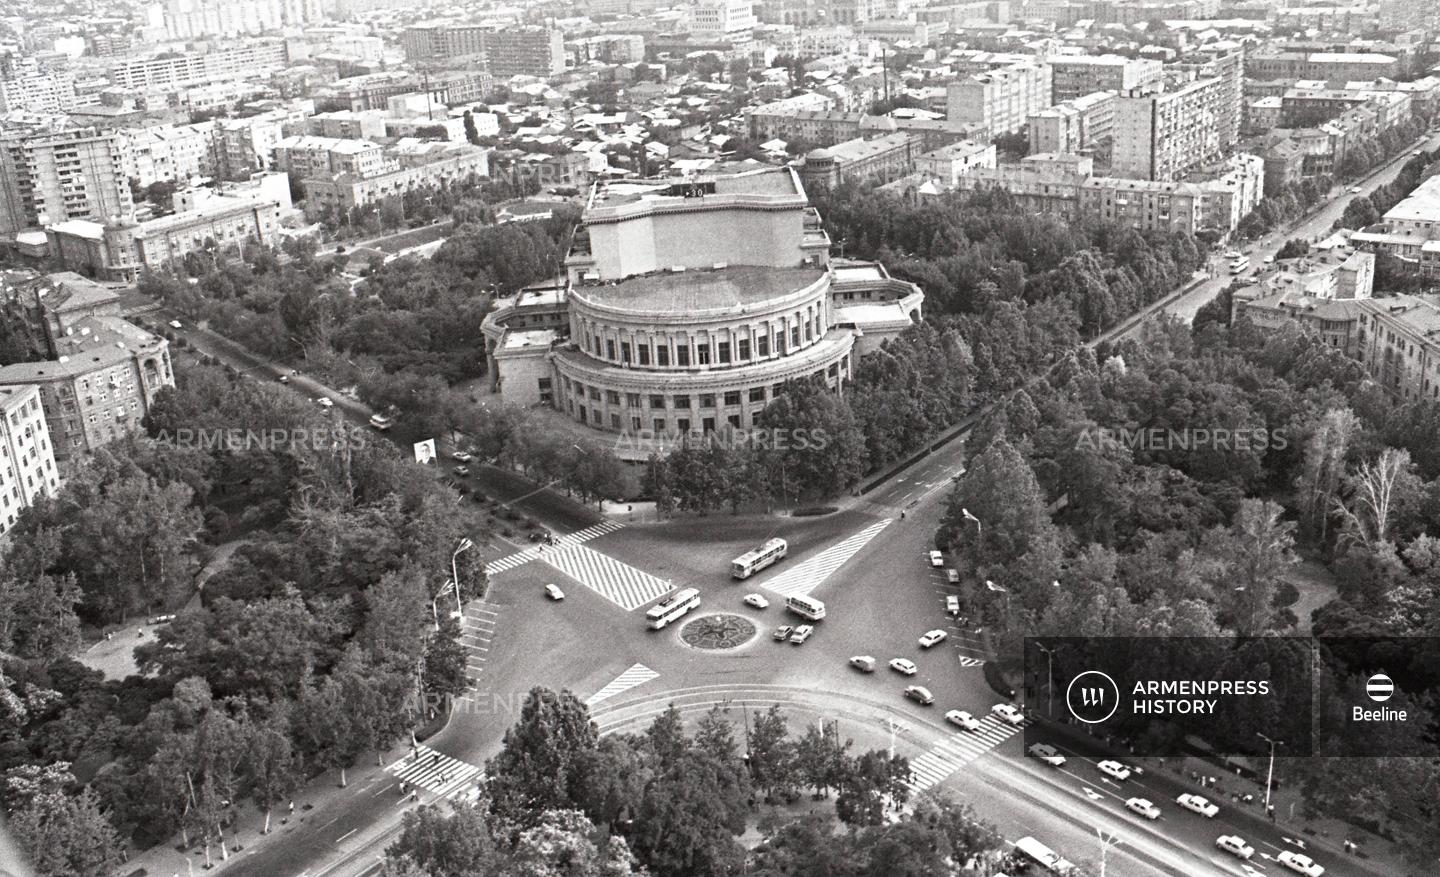 Երևանյան համայնապատկեր. Օպերայի և բալետի ազգային ակադեմիական թատրոն